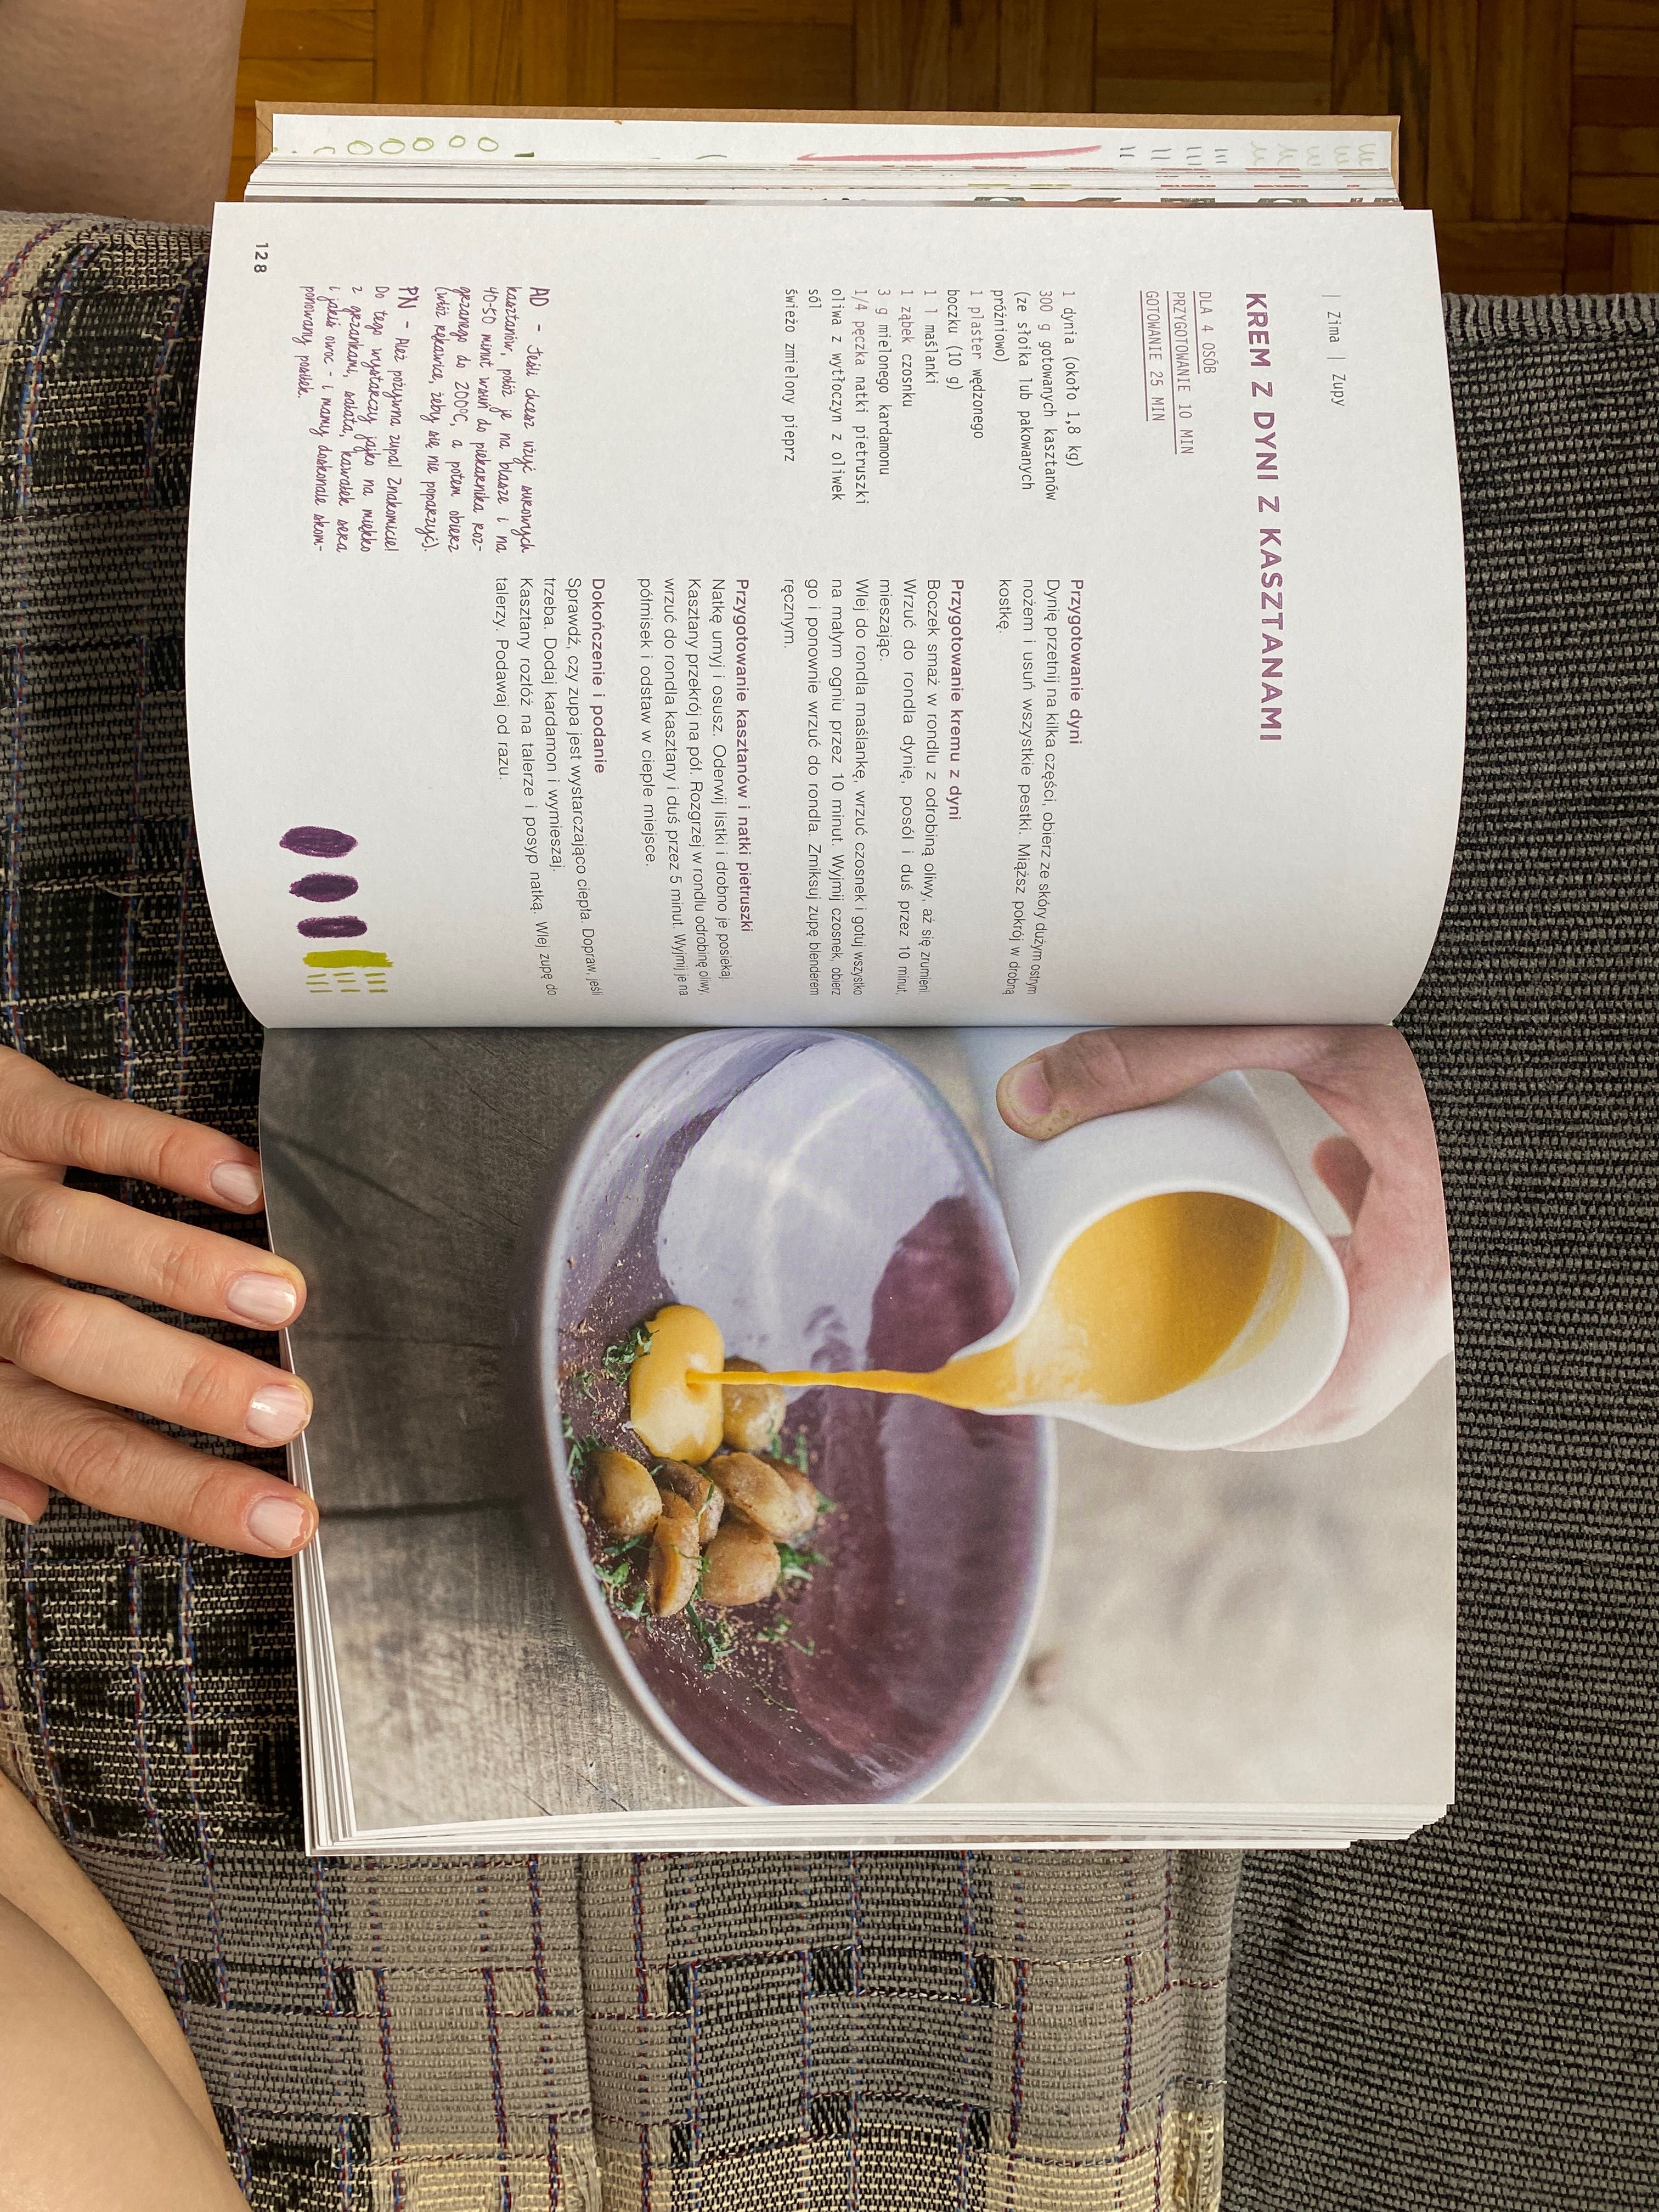 Książka kucharska "Naturalnie prosto, zdrowo, smacznie" Alain Ducasse